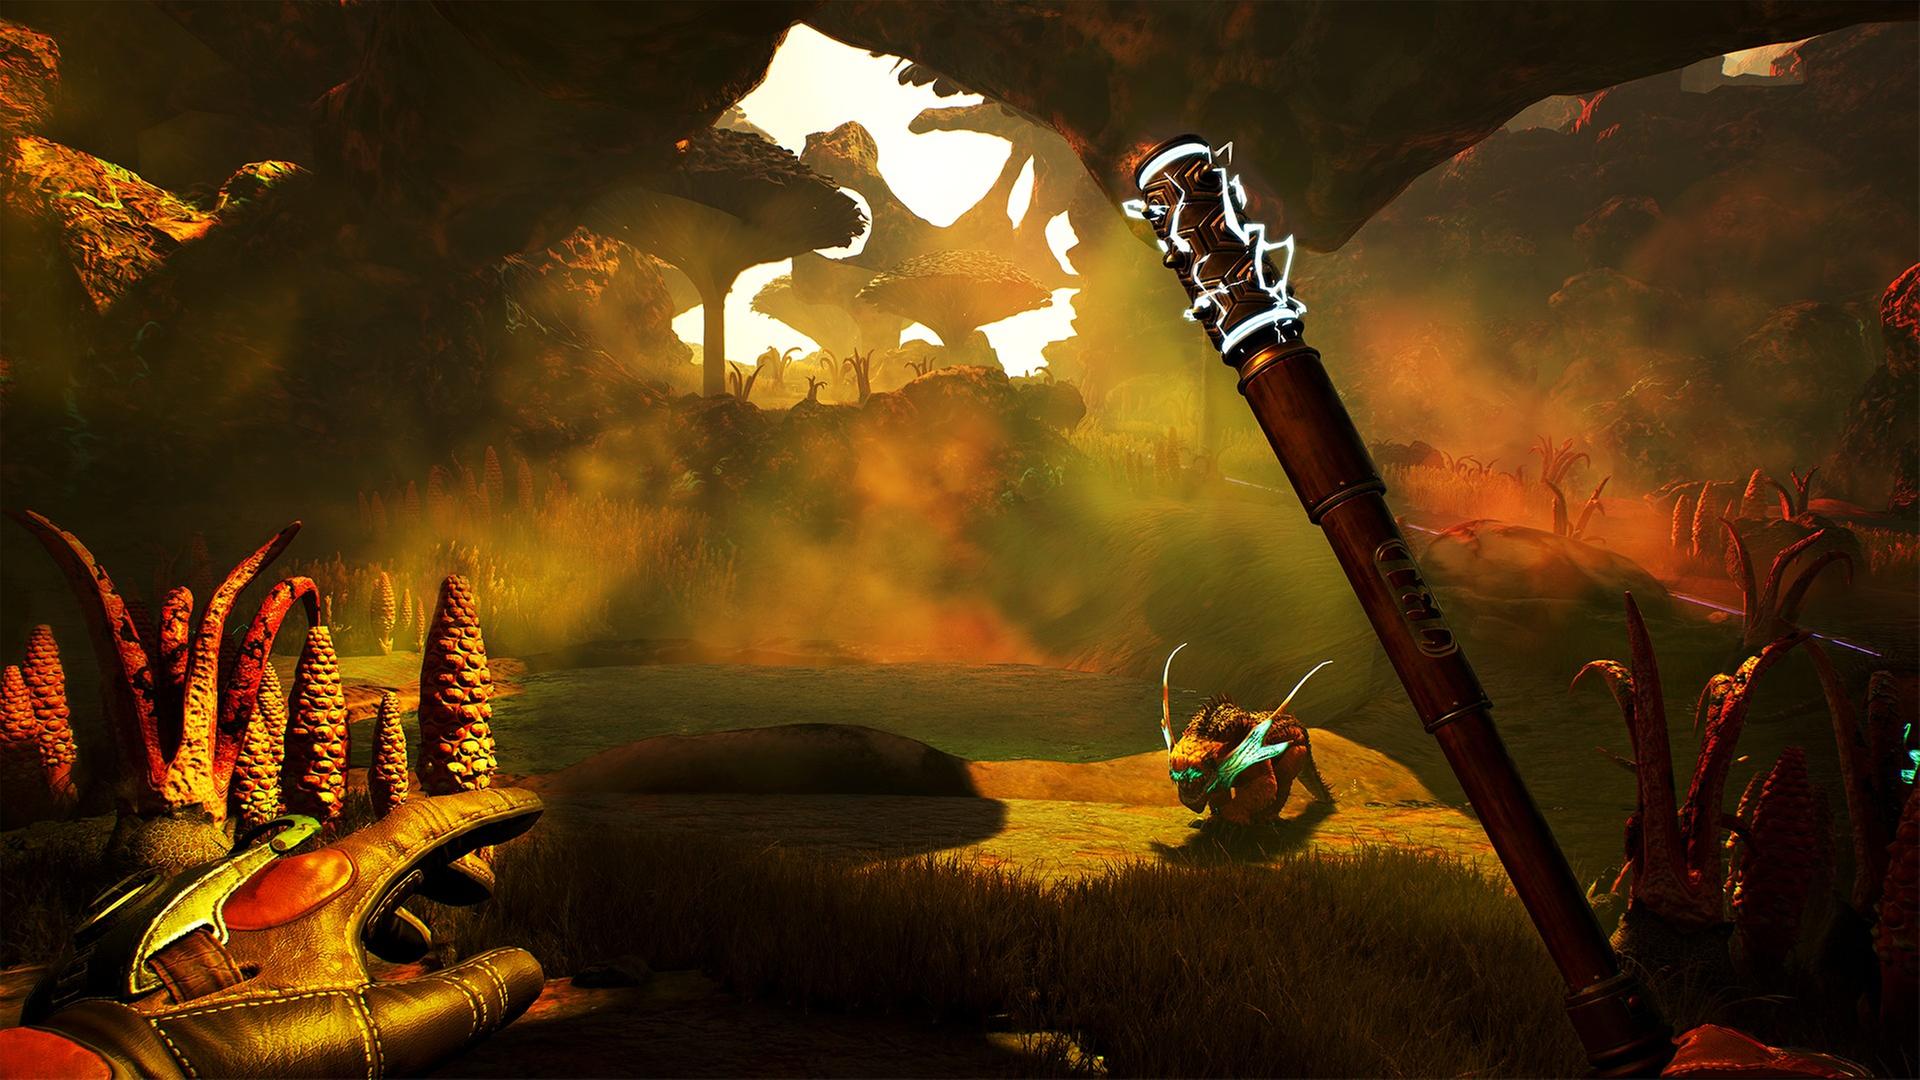 Zu sehen ist ein Ausschnitt aus dem Computerspiel "The Outer Worlds". Der Spieler blickt aus der Ego-Perspektive auf eine magische Welt